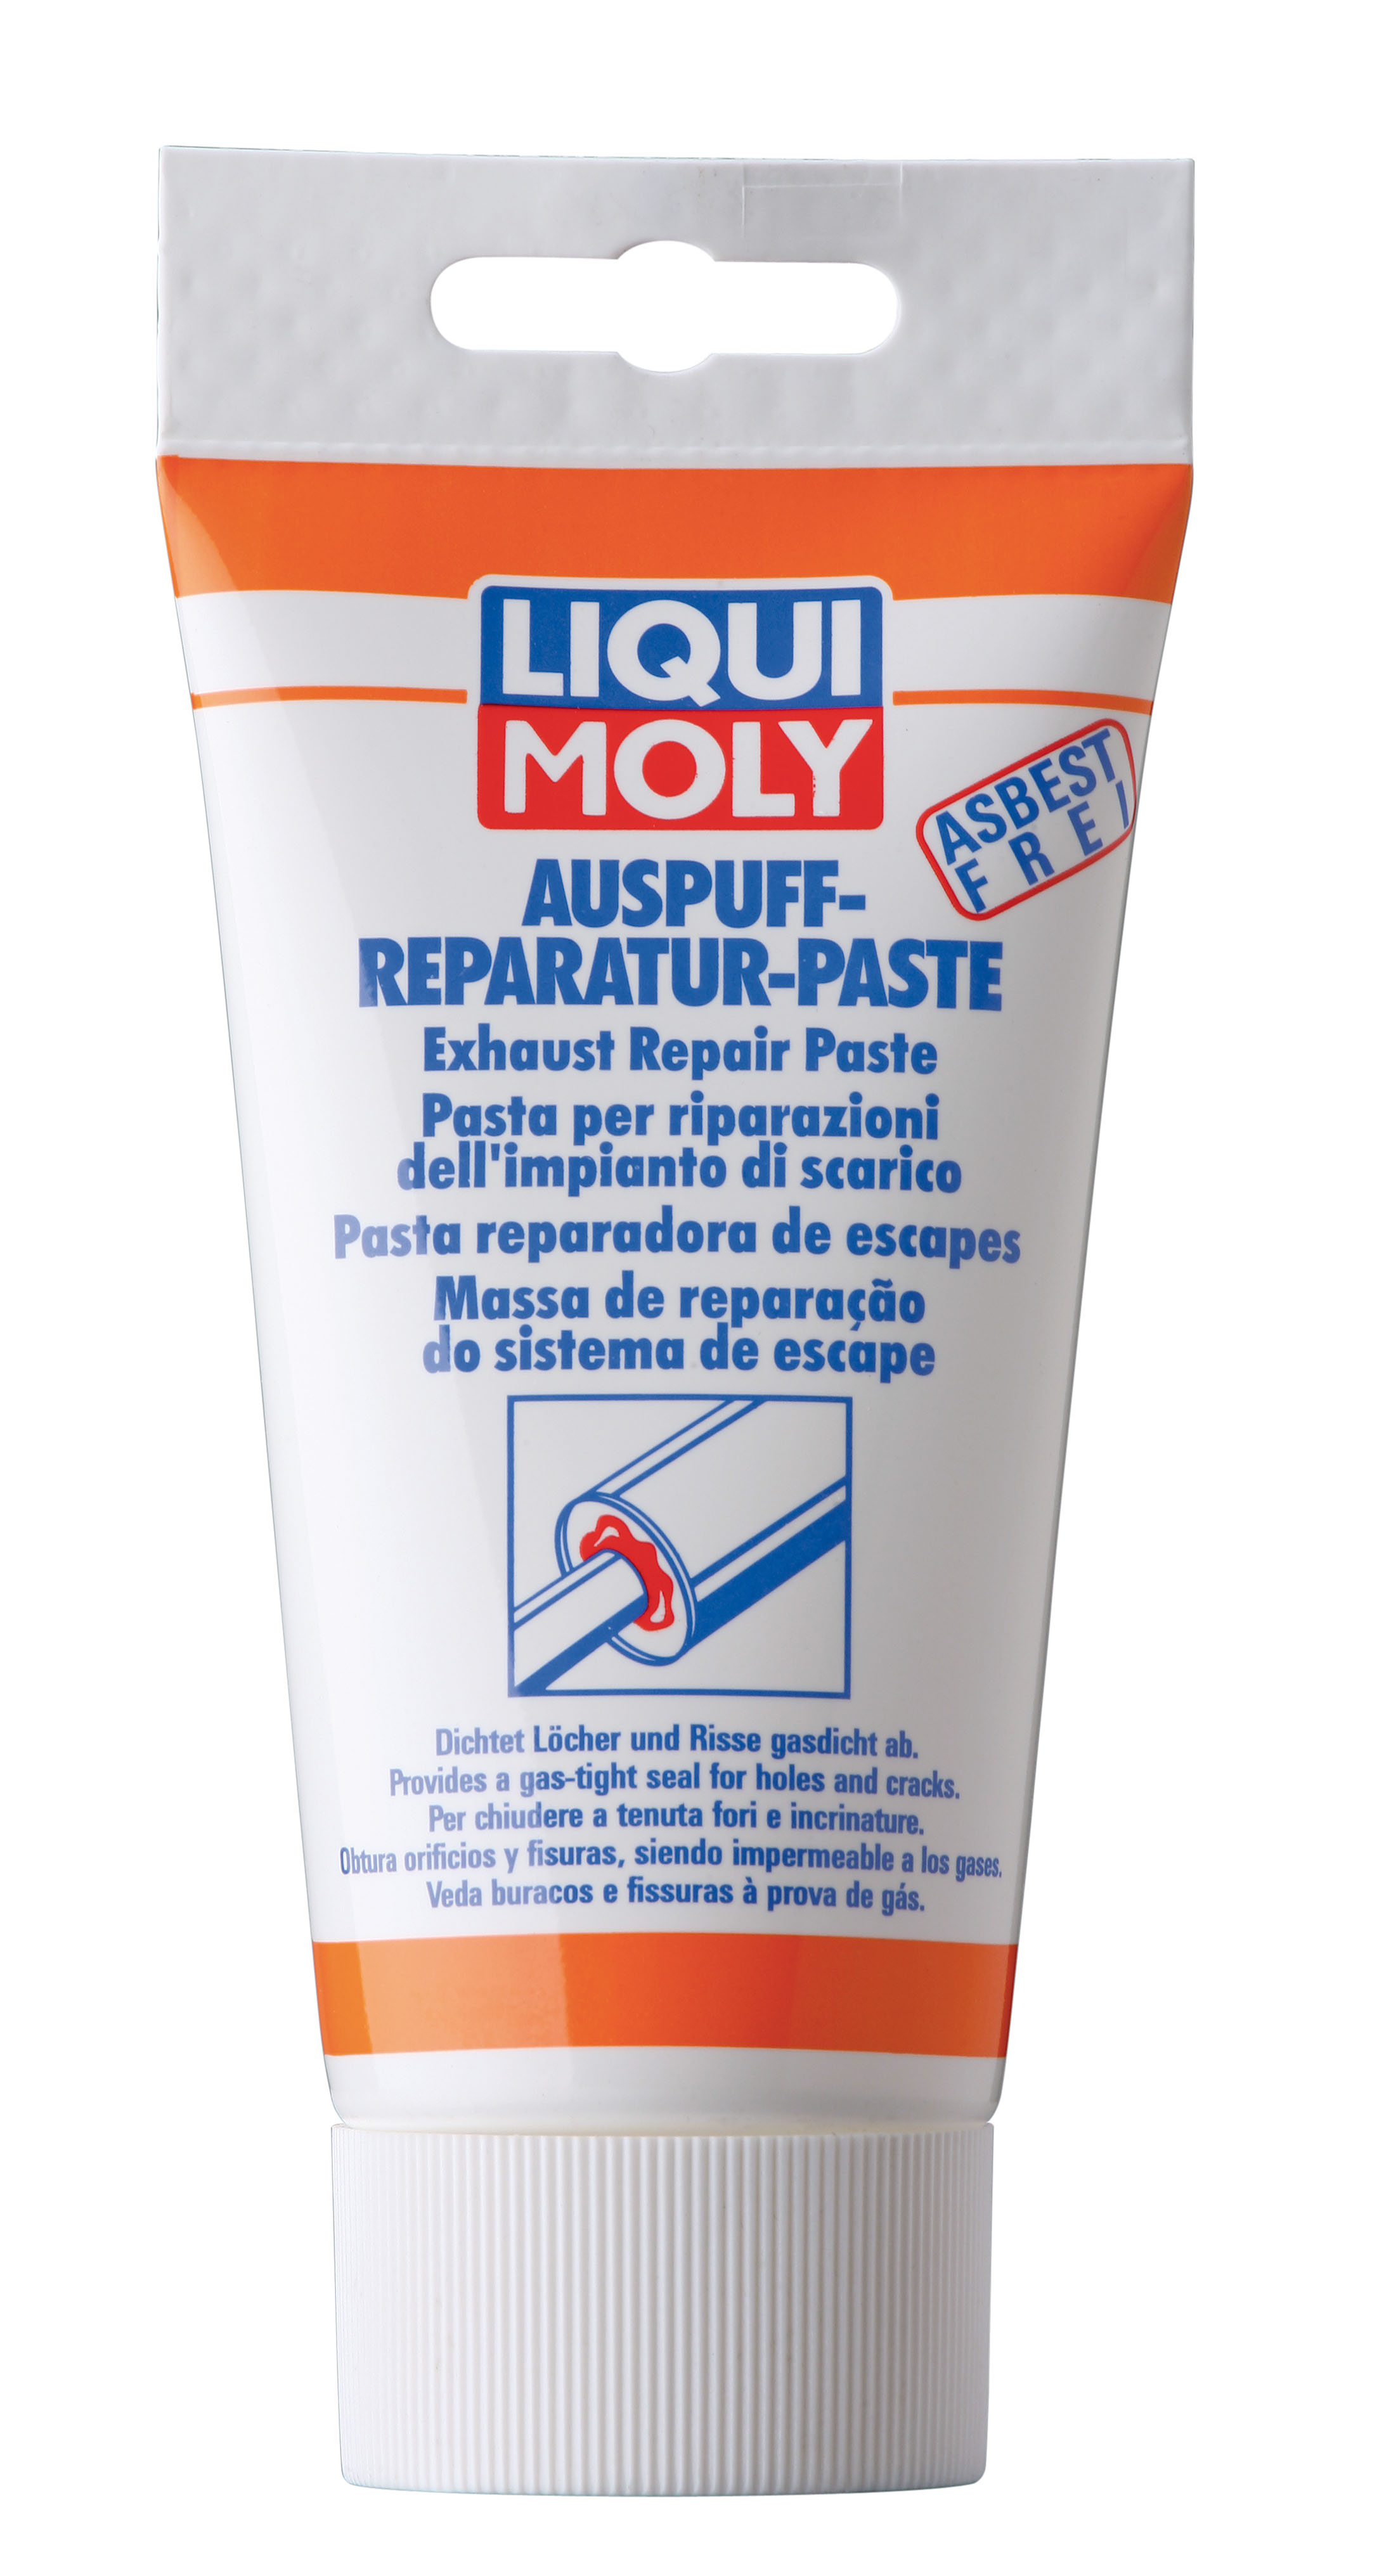 Liqui Moly 3340 Auspuff-Reparatur-Paste 200g - Auspuffpaste